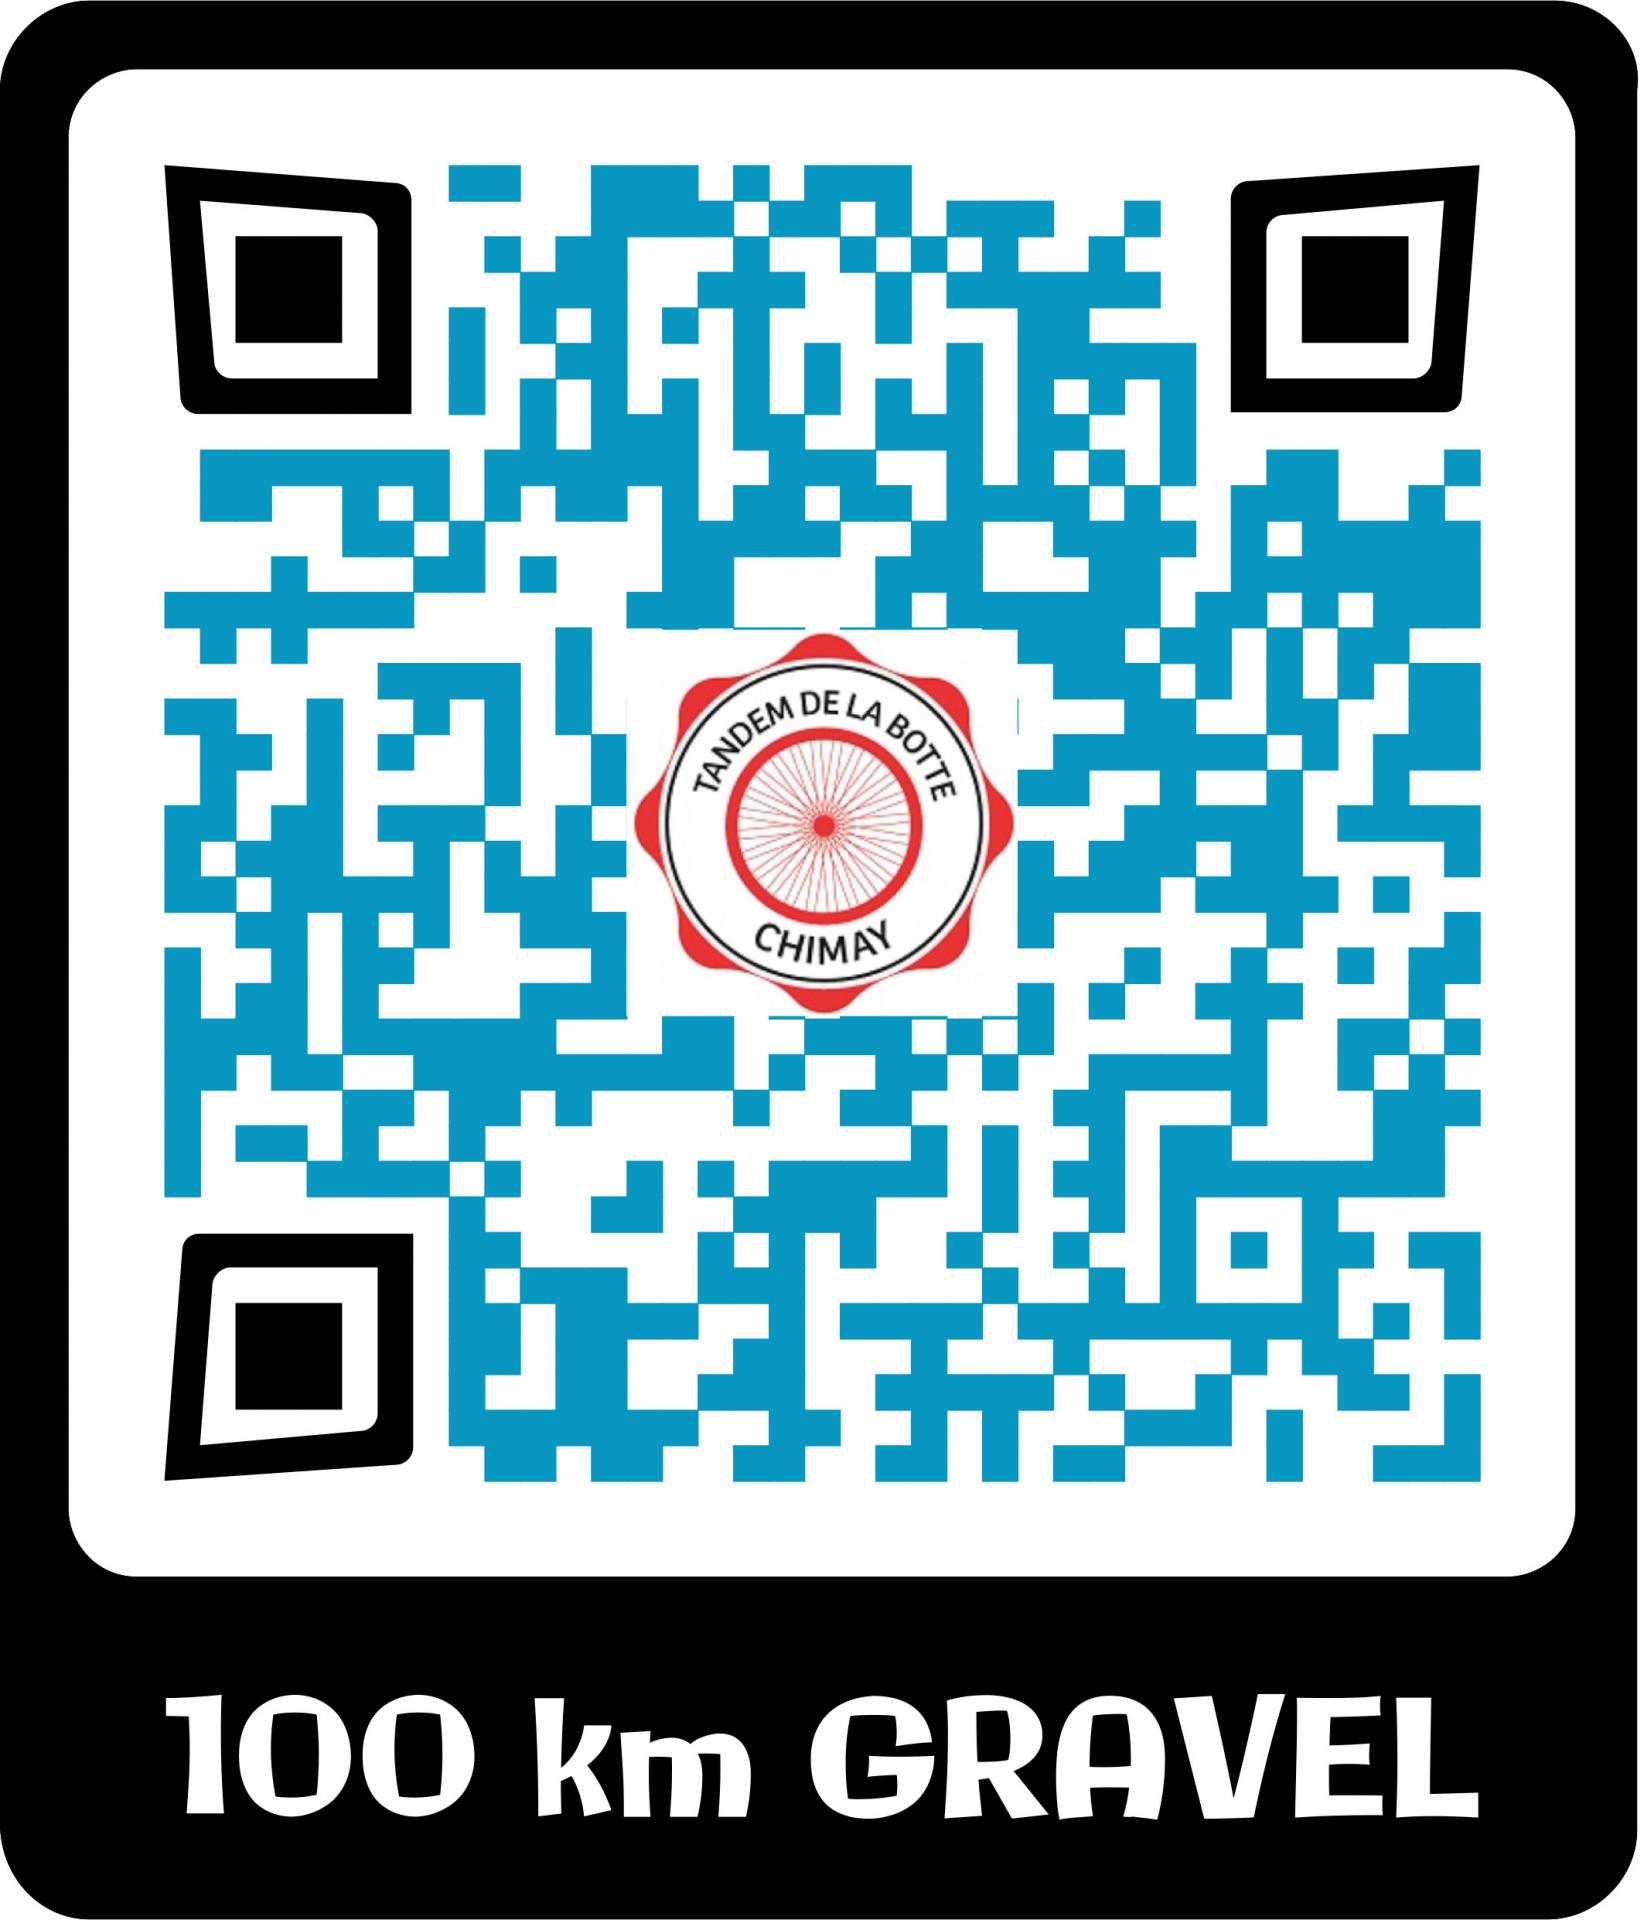 100 km gravel